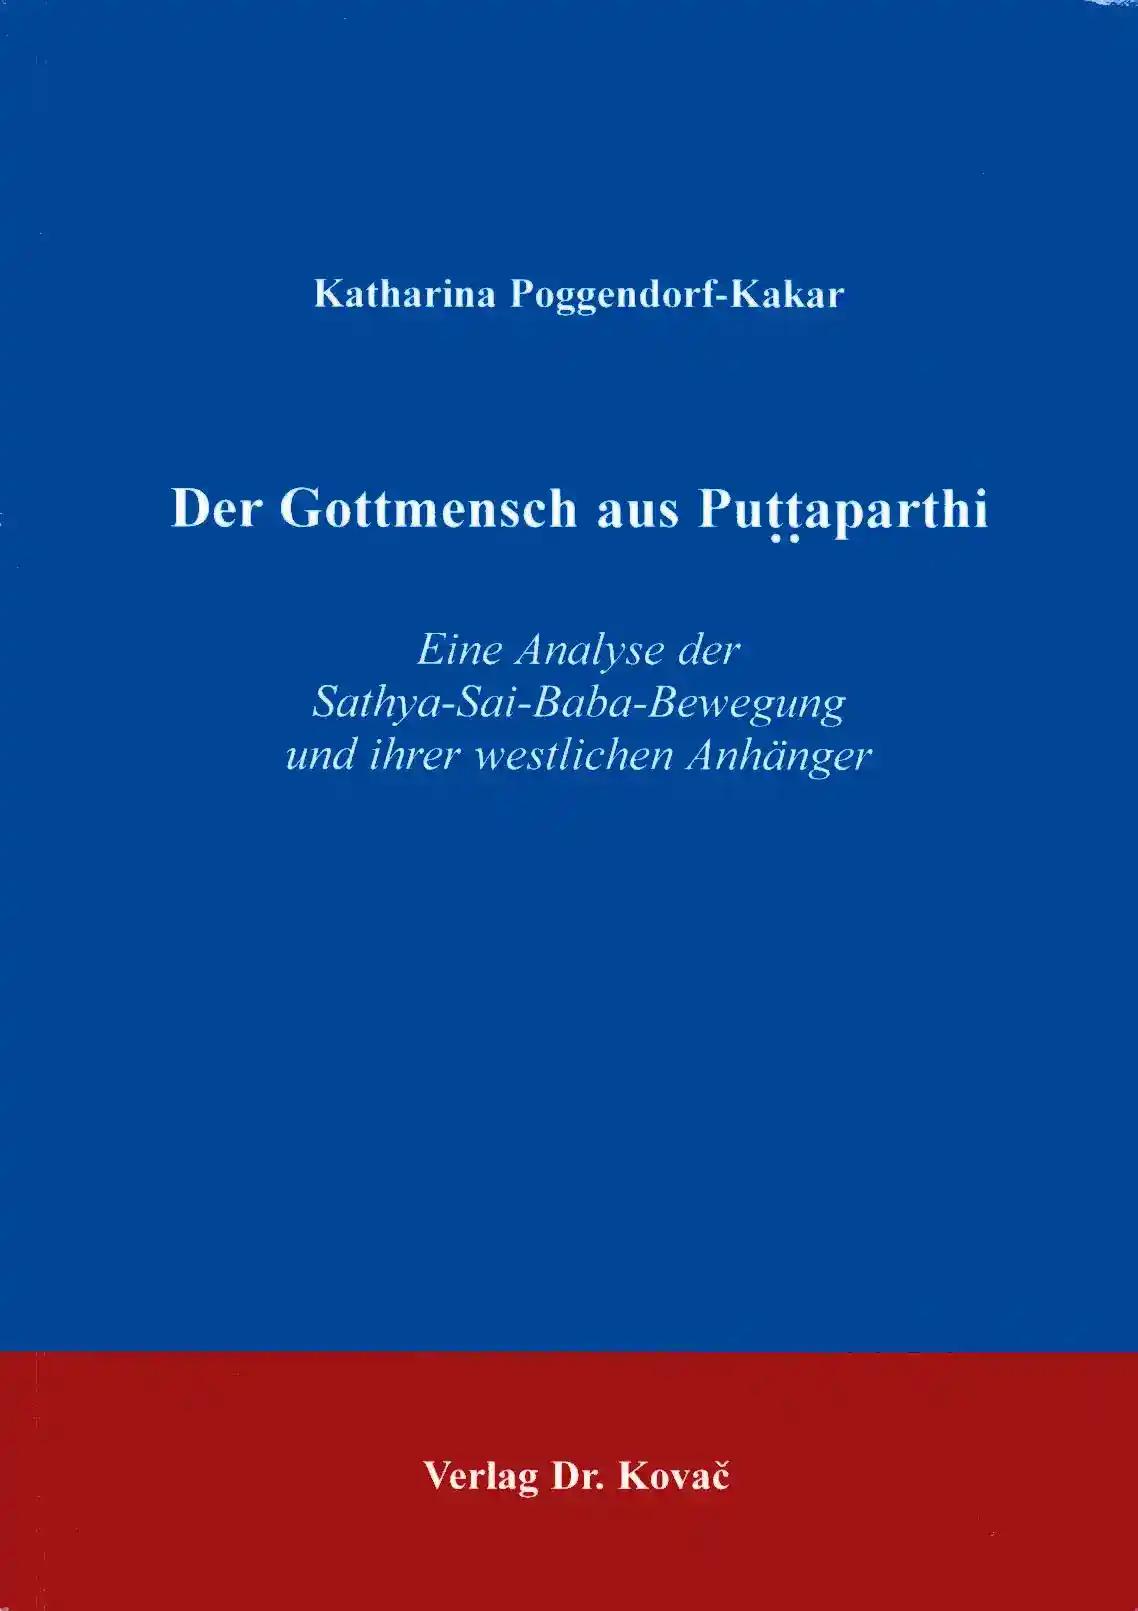 Der Gottmensch aus Puttaparthi, Eine Analyse der Sathya-Sai-Baba Bewegung und ihrer westlichen AnhÃ¤nger - Katharina Poggendorf